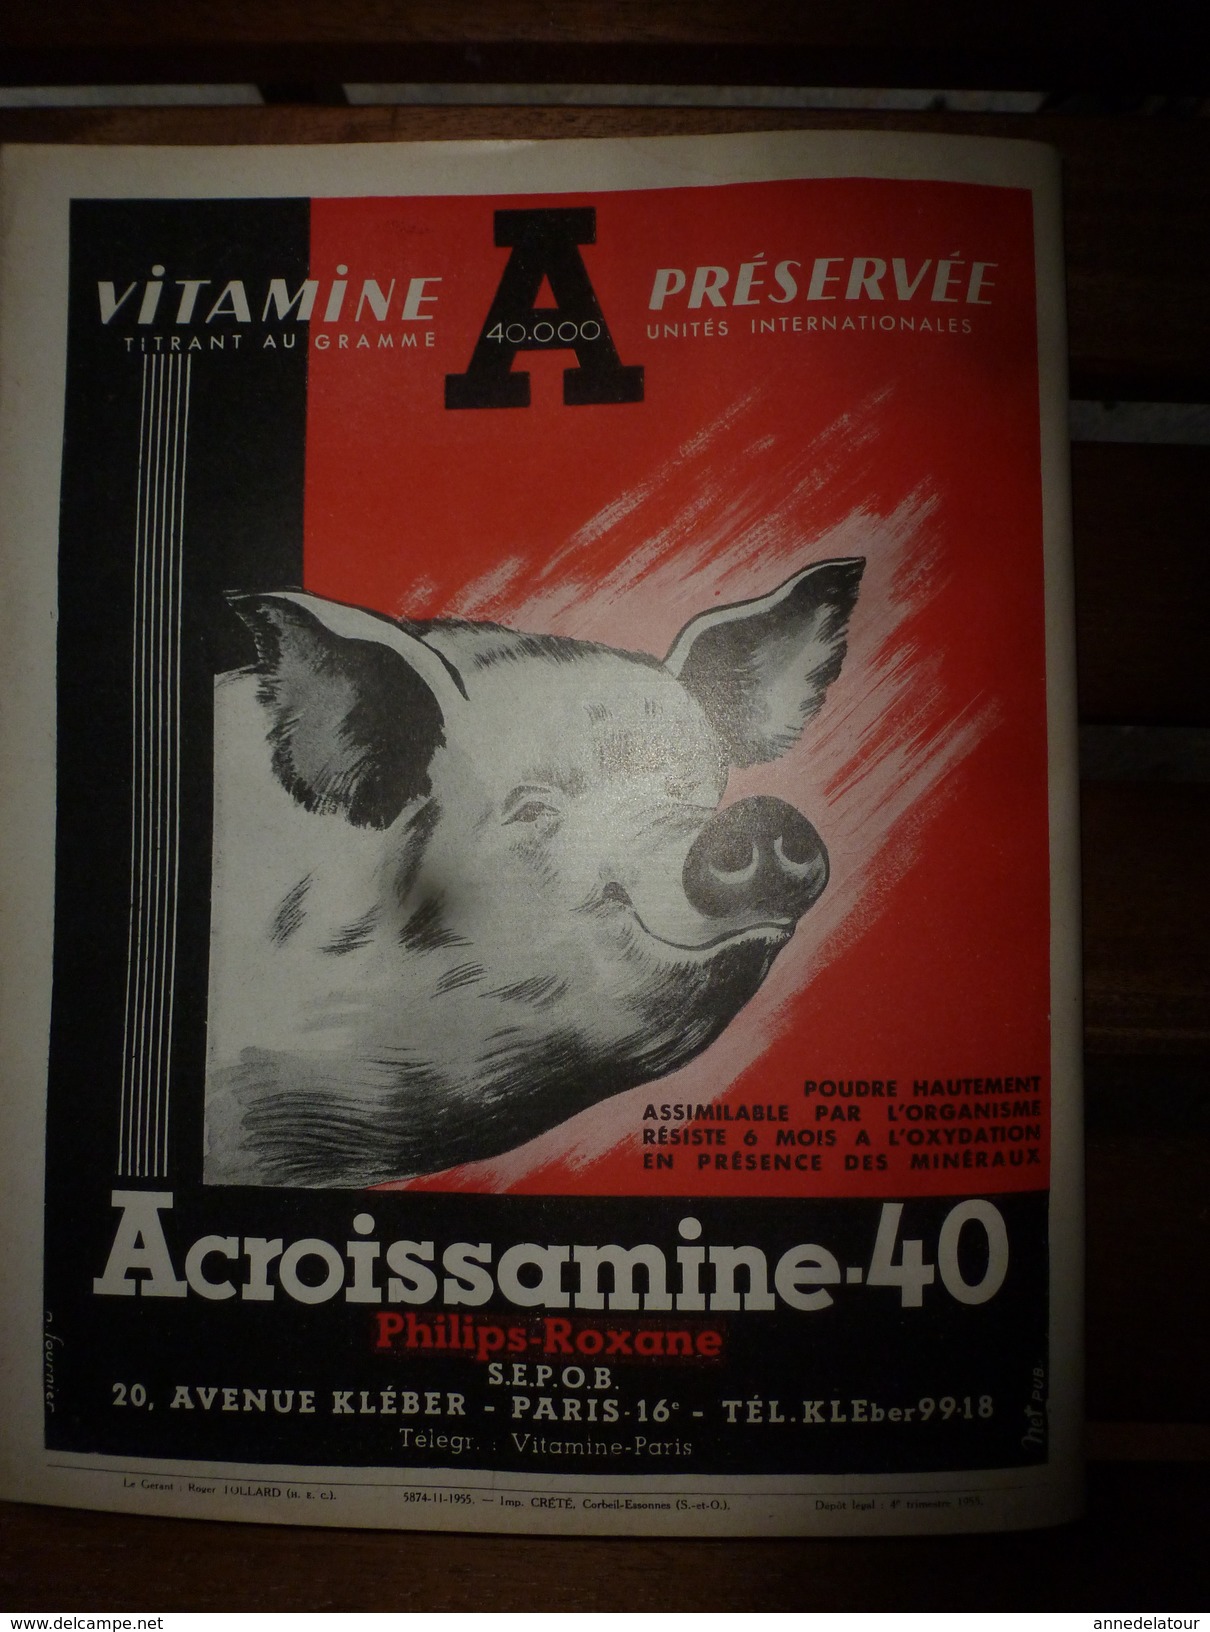 1955 LRDLE :La Revue De L'Elevage  N° SPECIAL  ----->Chevaux;Aviculture;Porcins;Moutons;Viande Et Lait;etc - Animaux